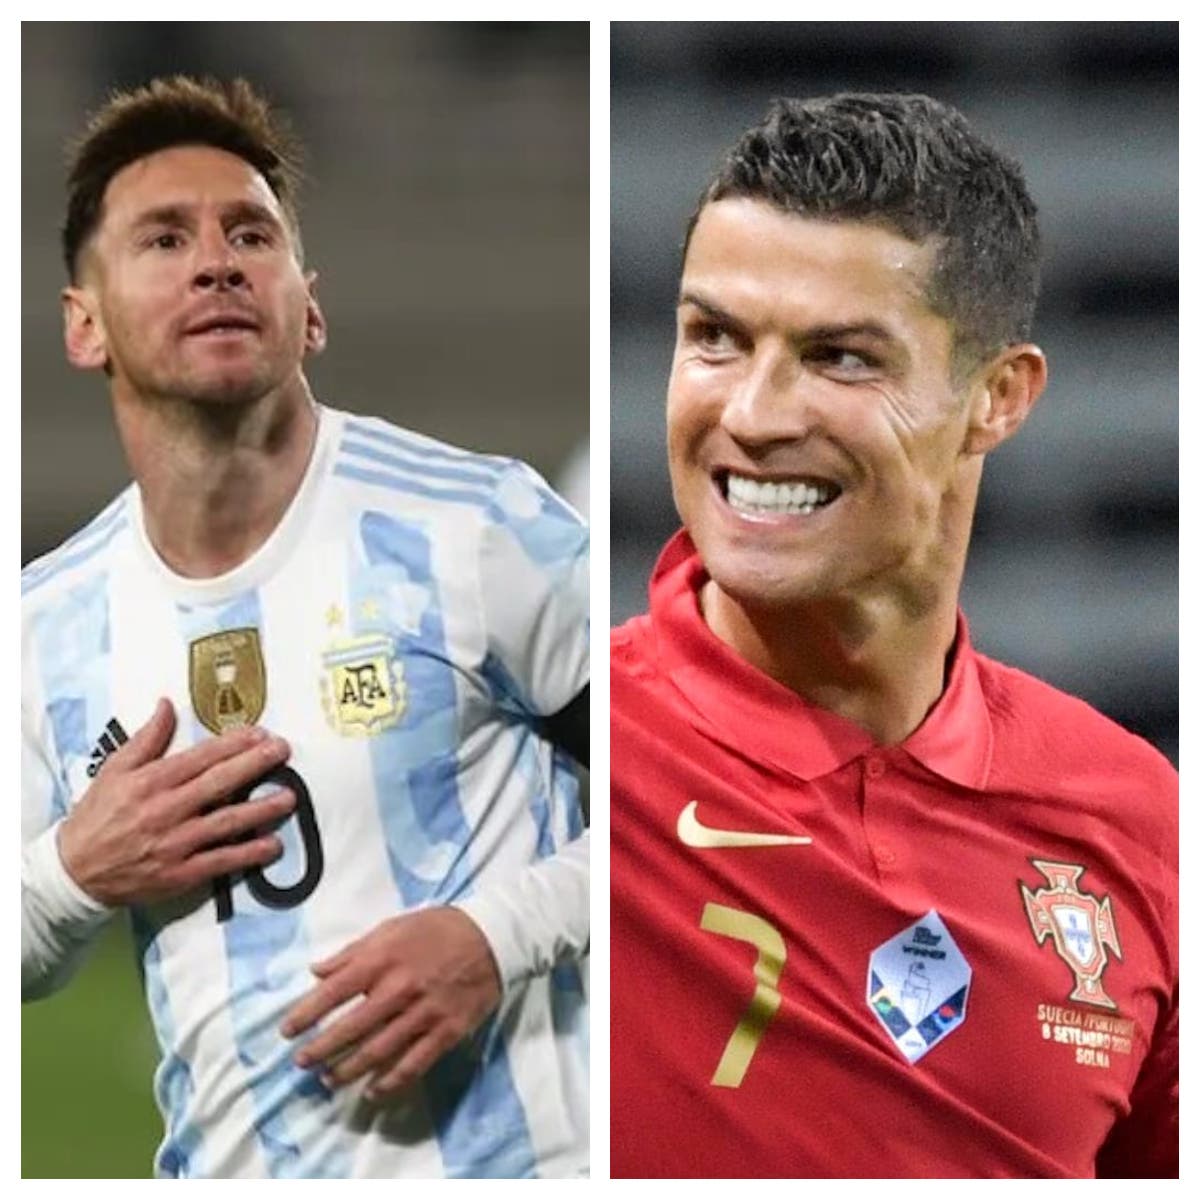 Messi y Cristiano en busca de la gloria en último Mundial